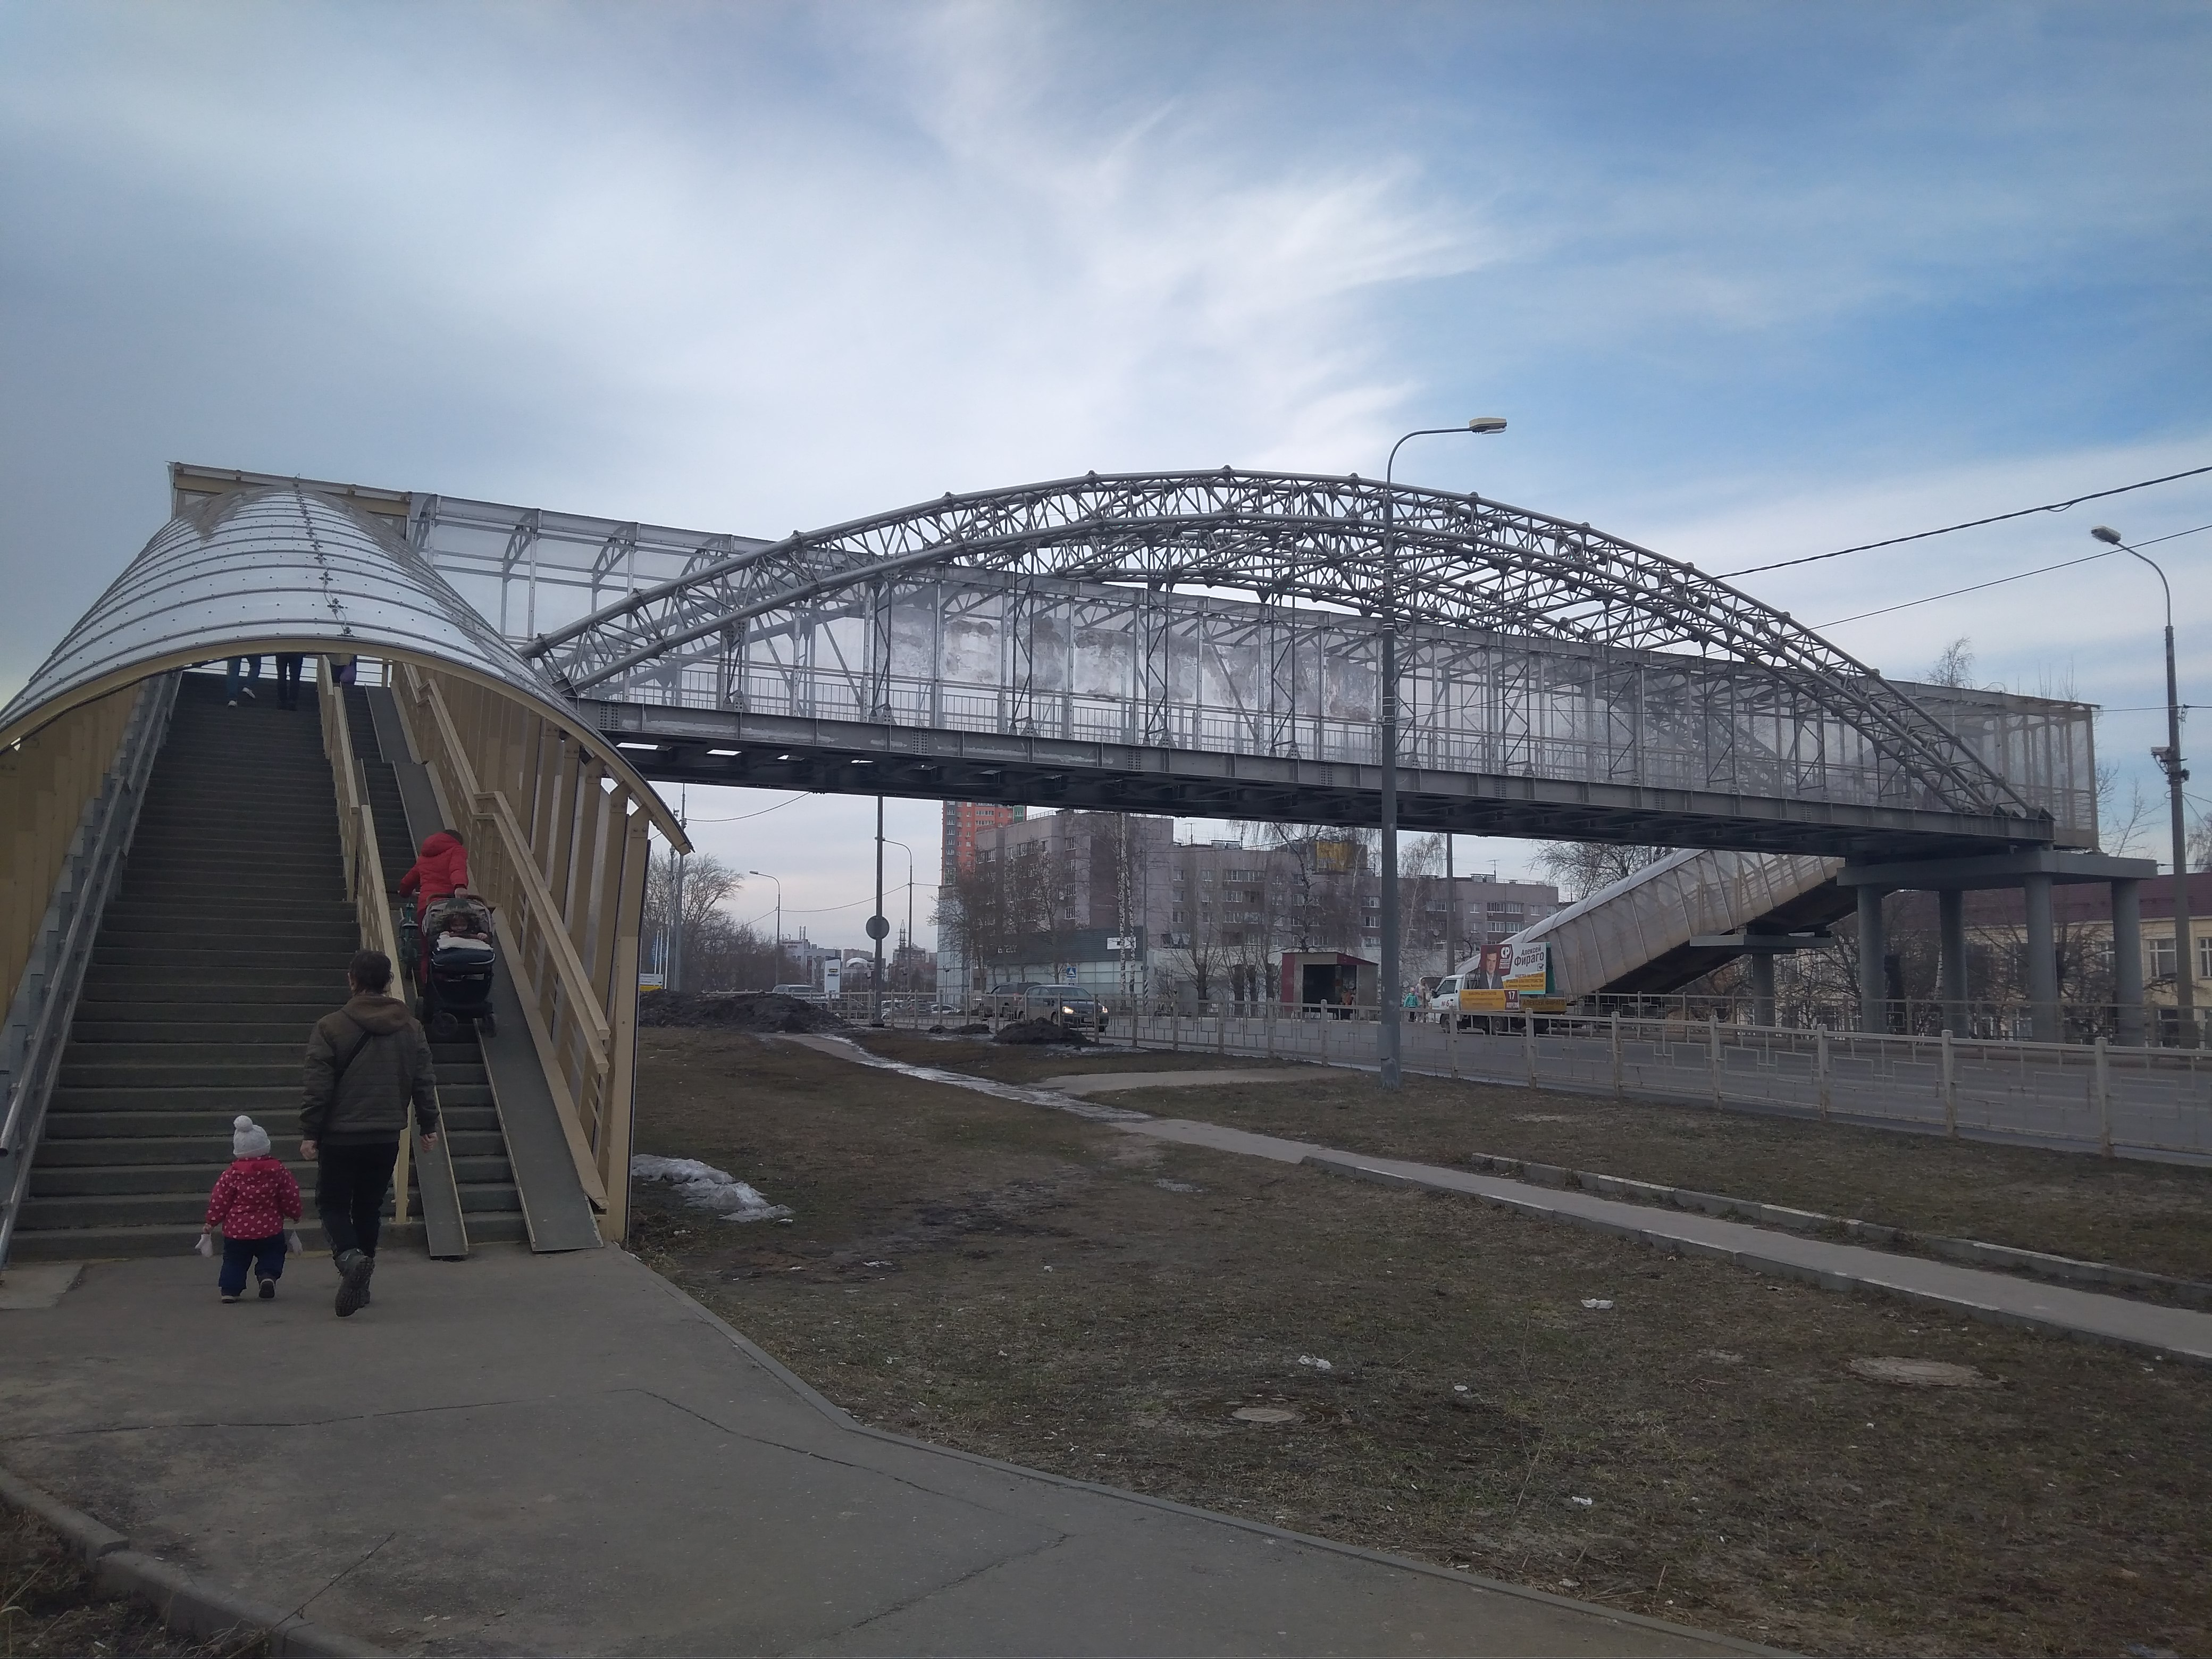 Мосты высоких технологий завоевывают Нижегородскую область - фото 1